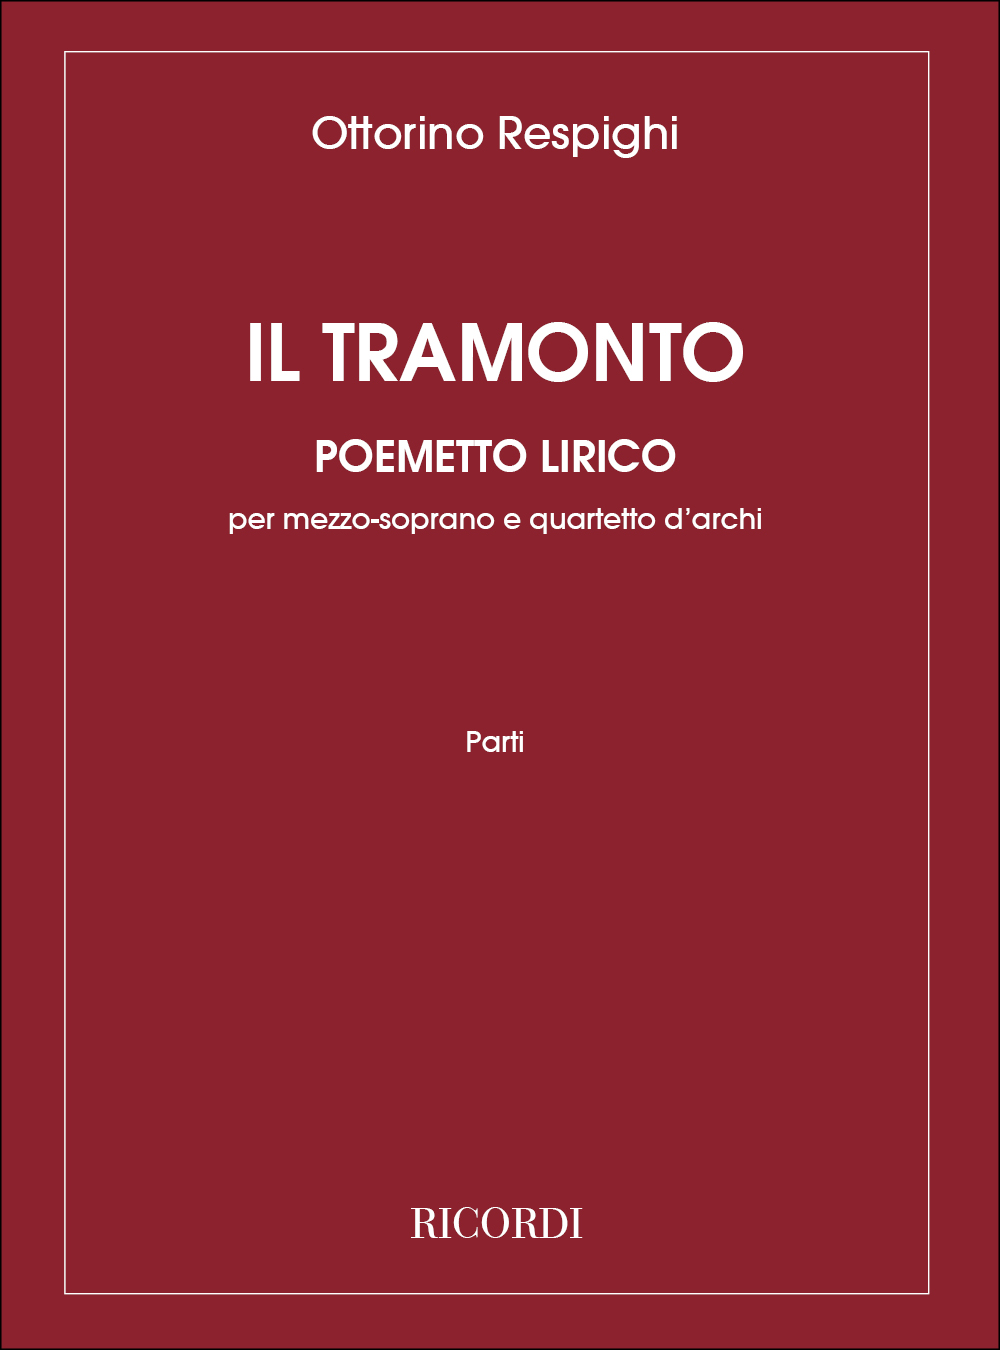 Ottorino Respighi: Il Tramonto. Poemetto Lirico: Mezzo-Soprano